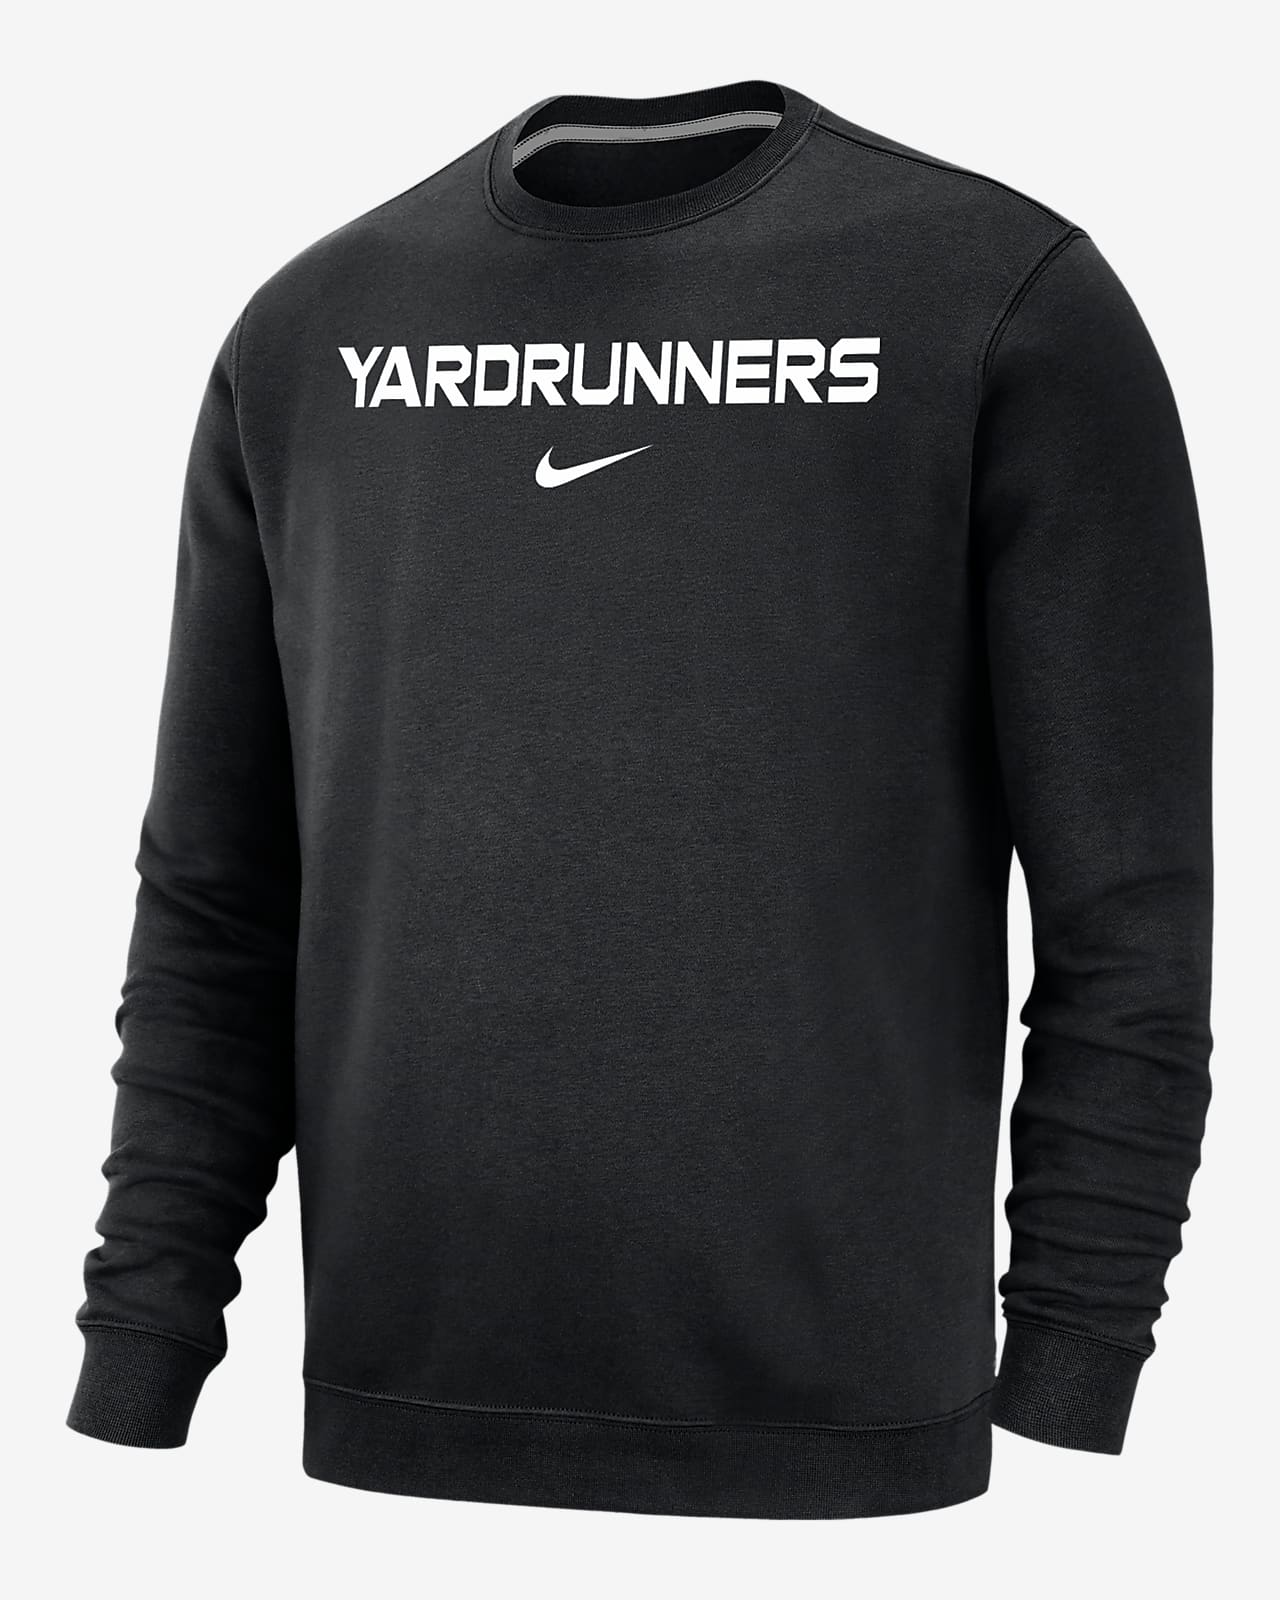 Nike College Club Fleece Yardrunners Men's Crew-Neck Sweatshirt